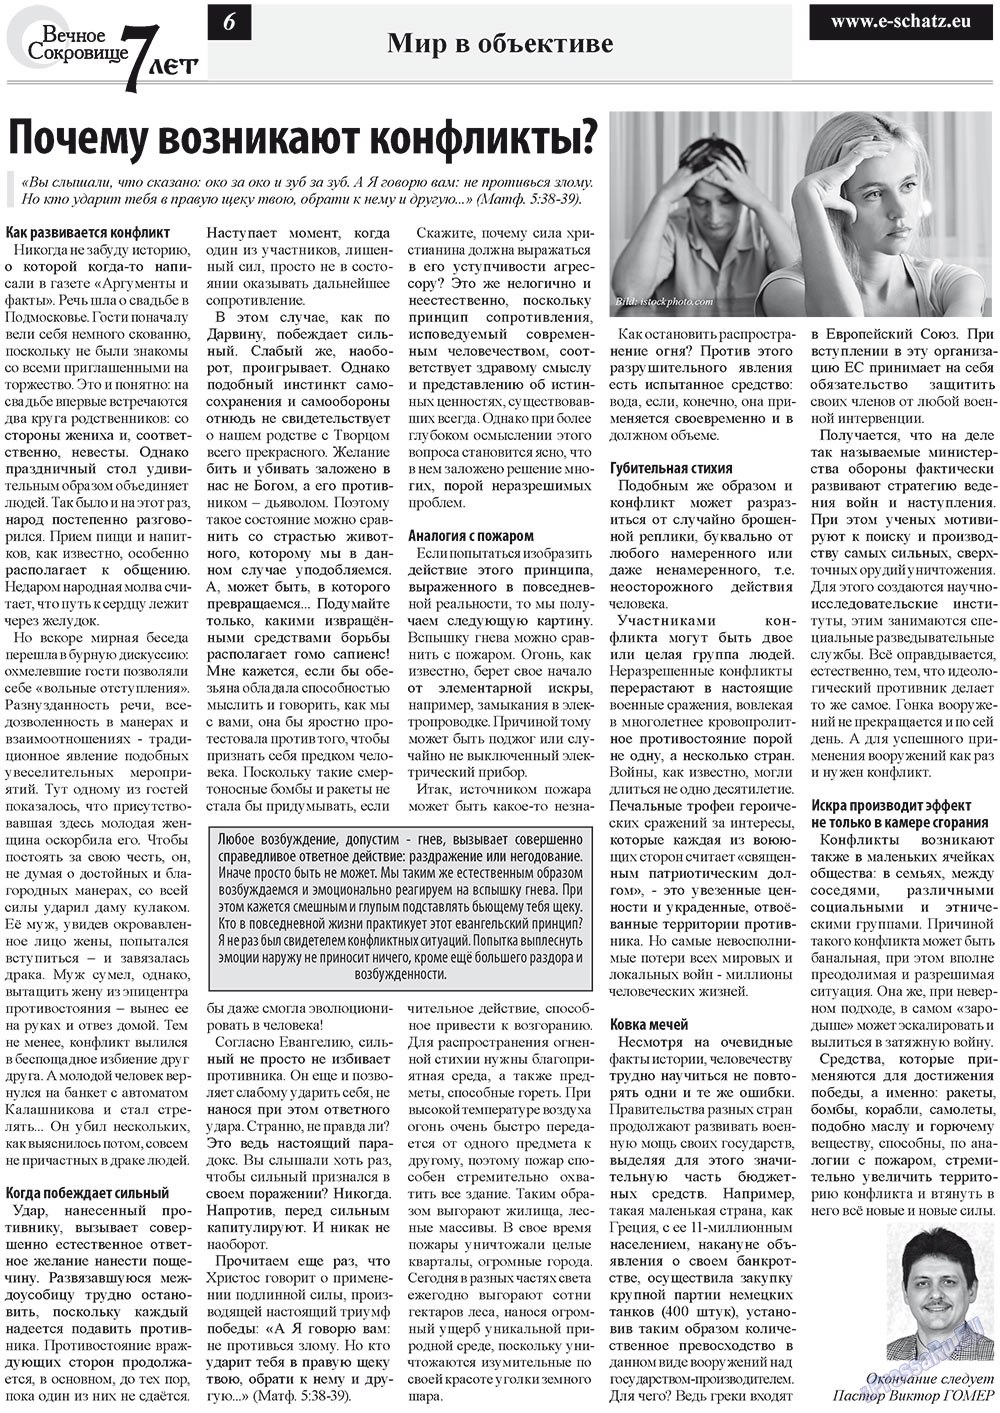 Вечное сокровище, газета. 2012 №5 стр.6